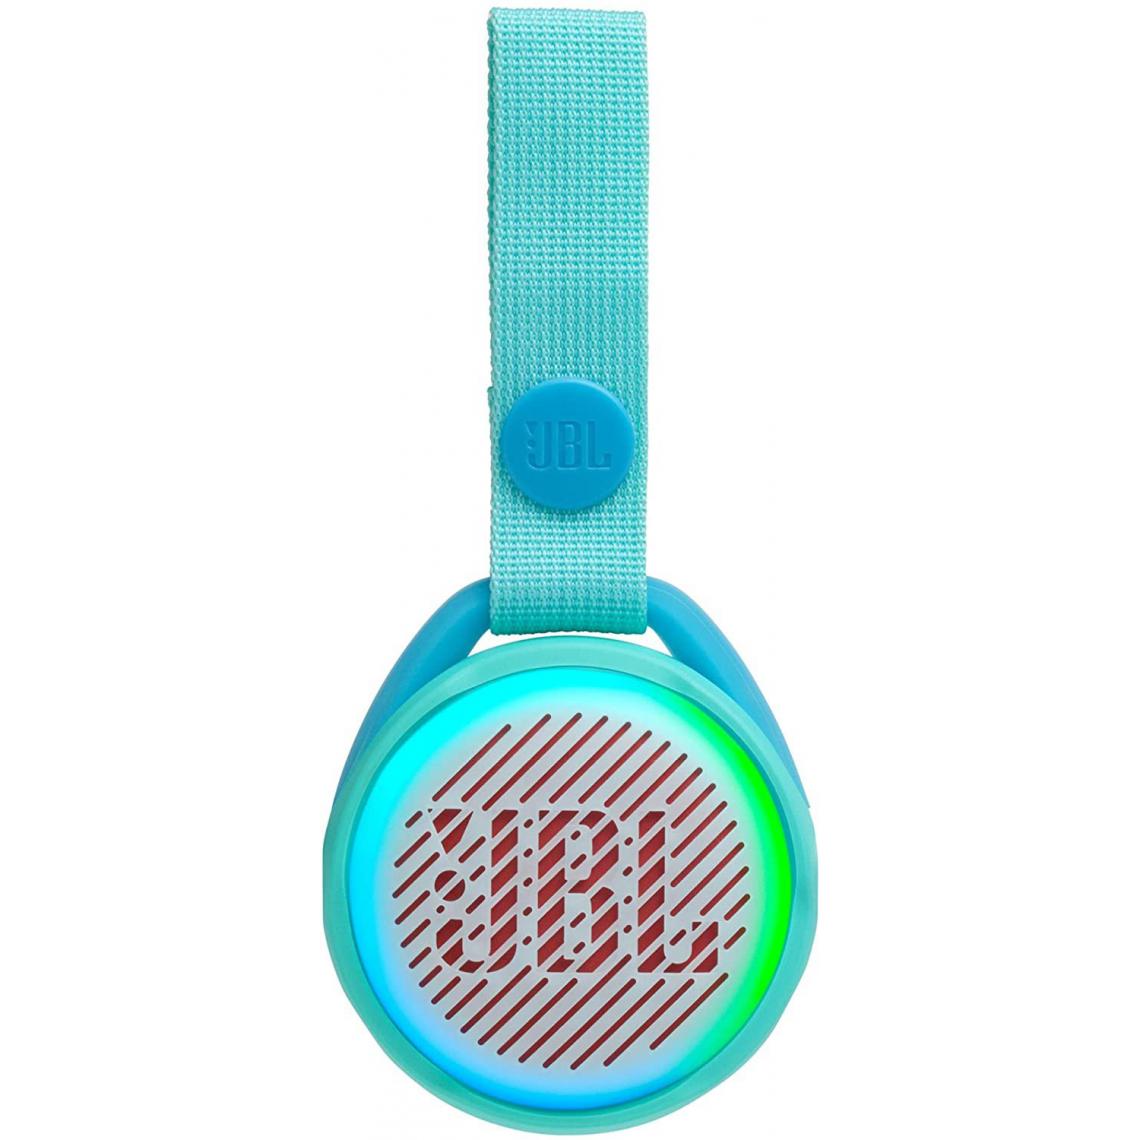 Chrono - JR POP JBL - Enceinte portable pour enfants - Bluetooth & Waterproof - Avec modes lumineux multicolores & autocollants - Autonomie 8 hrs,Turquoise - Enceintes Hifi